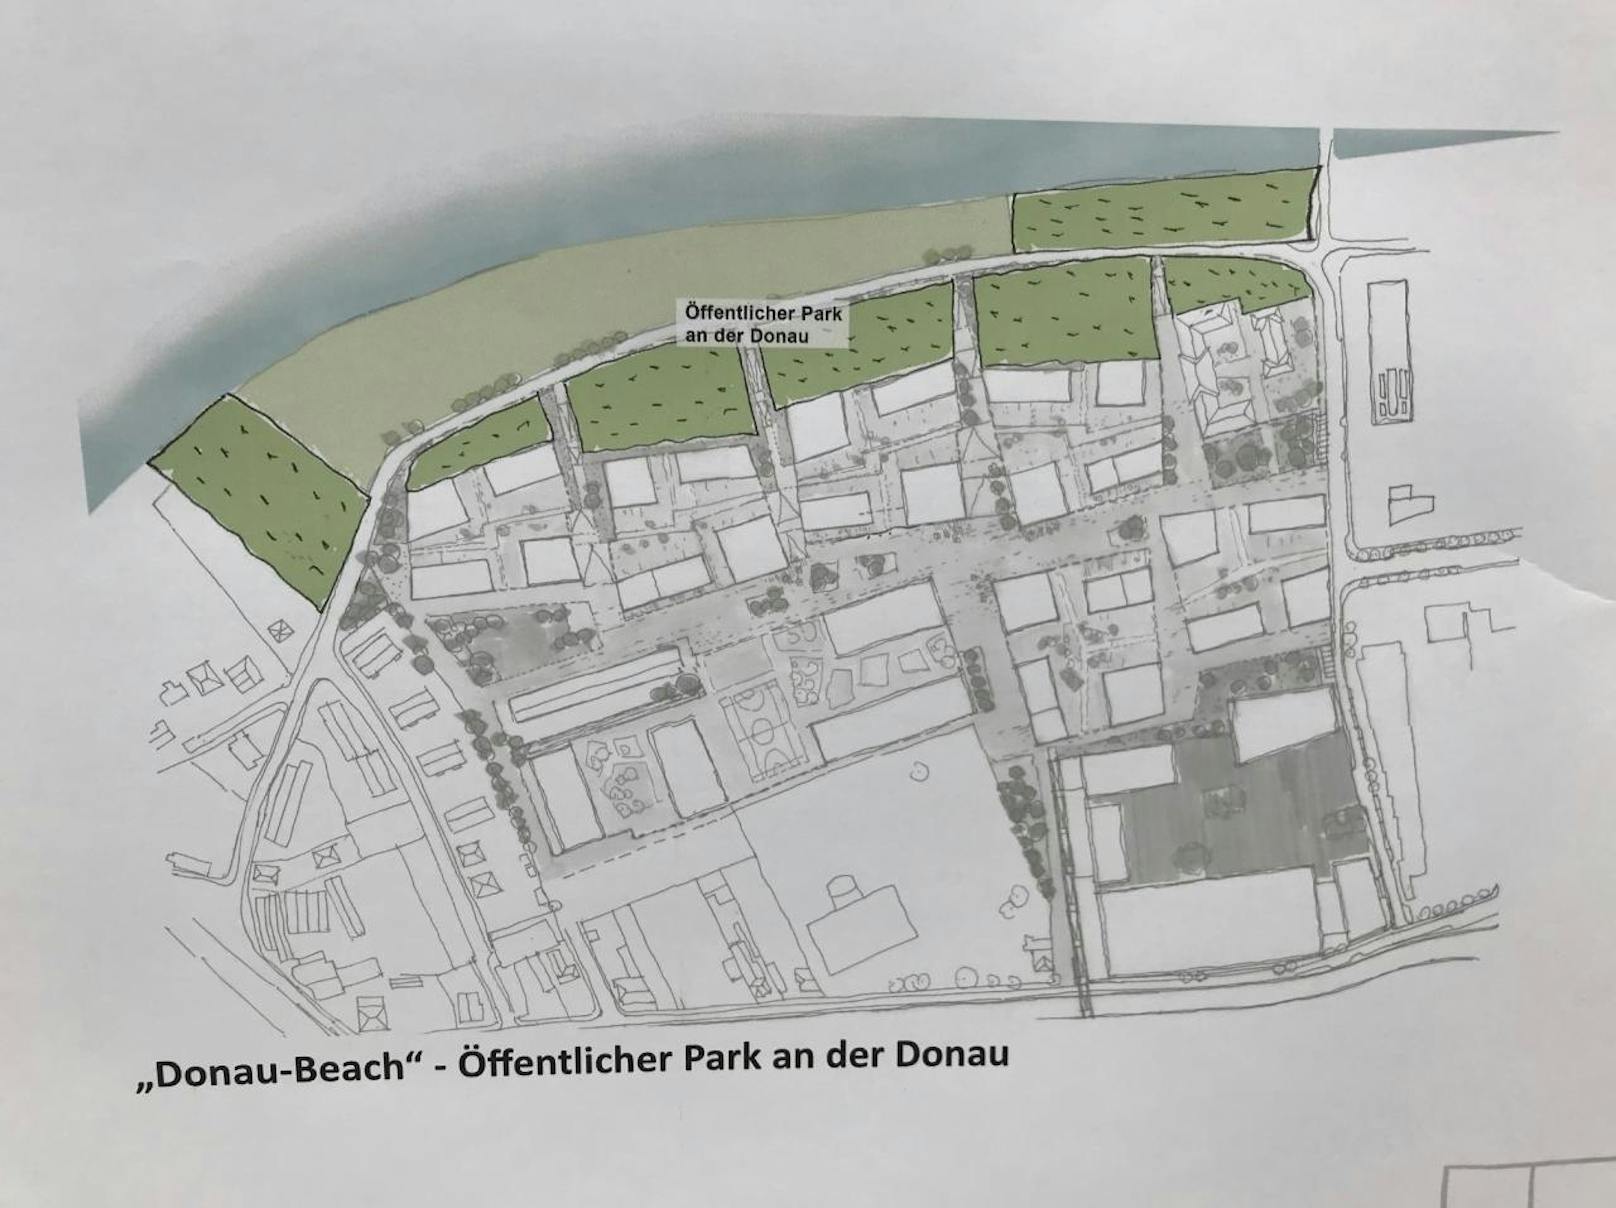 Auch ein "Donau-Beach", also ein öffentlicher Park am Wasser, ist geplant.